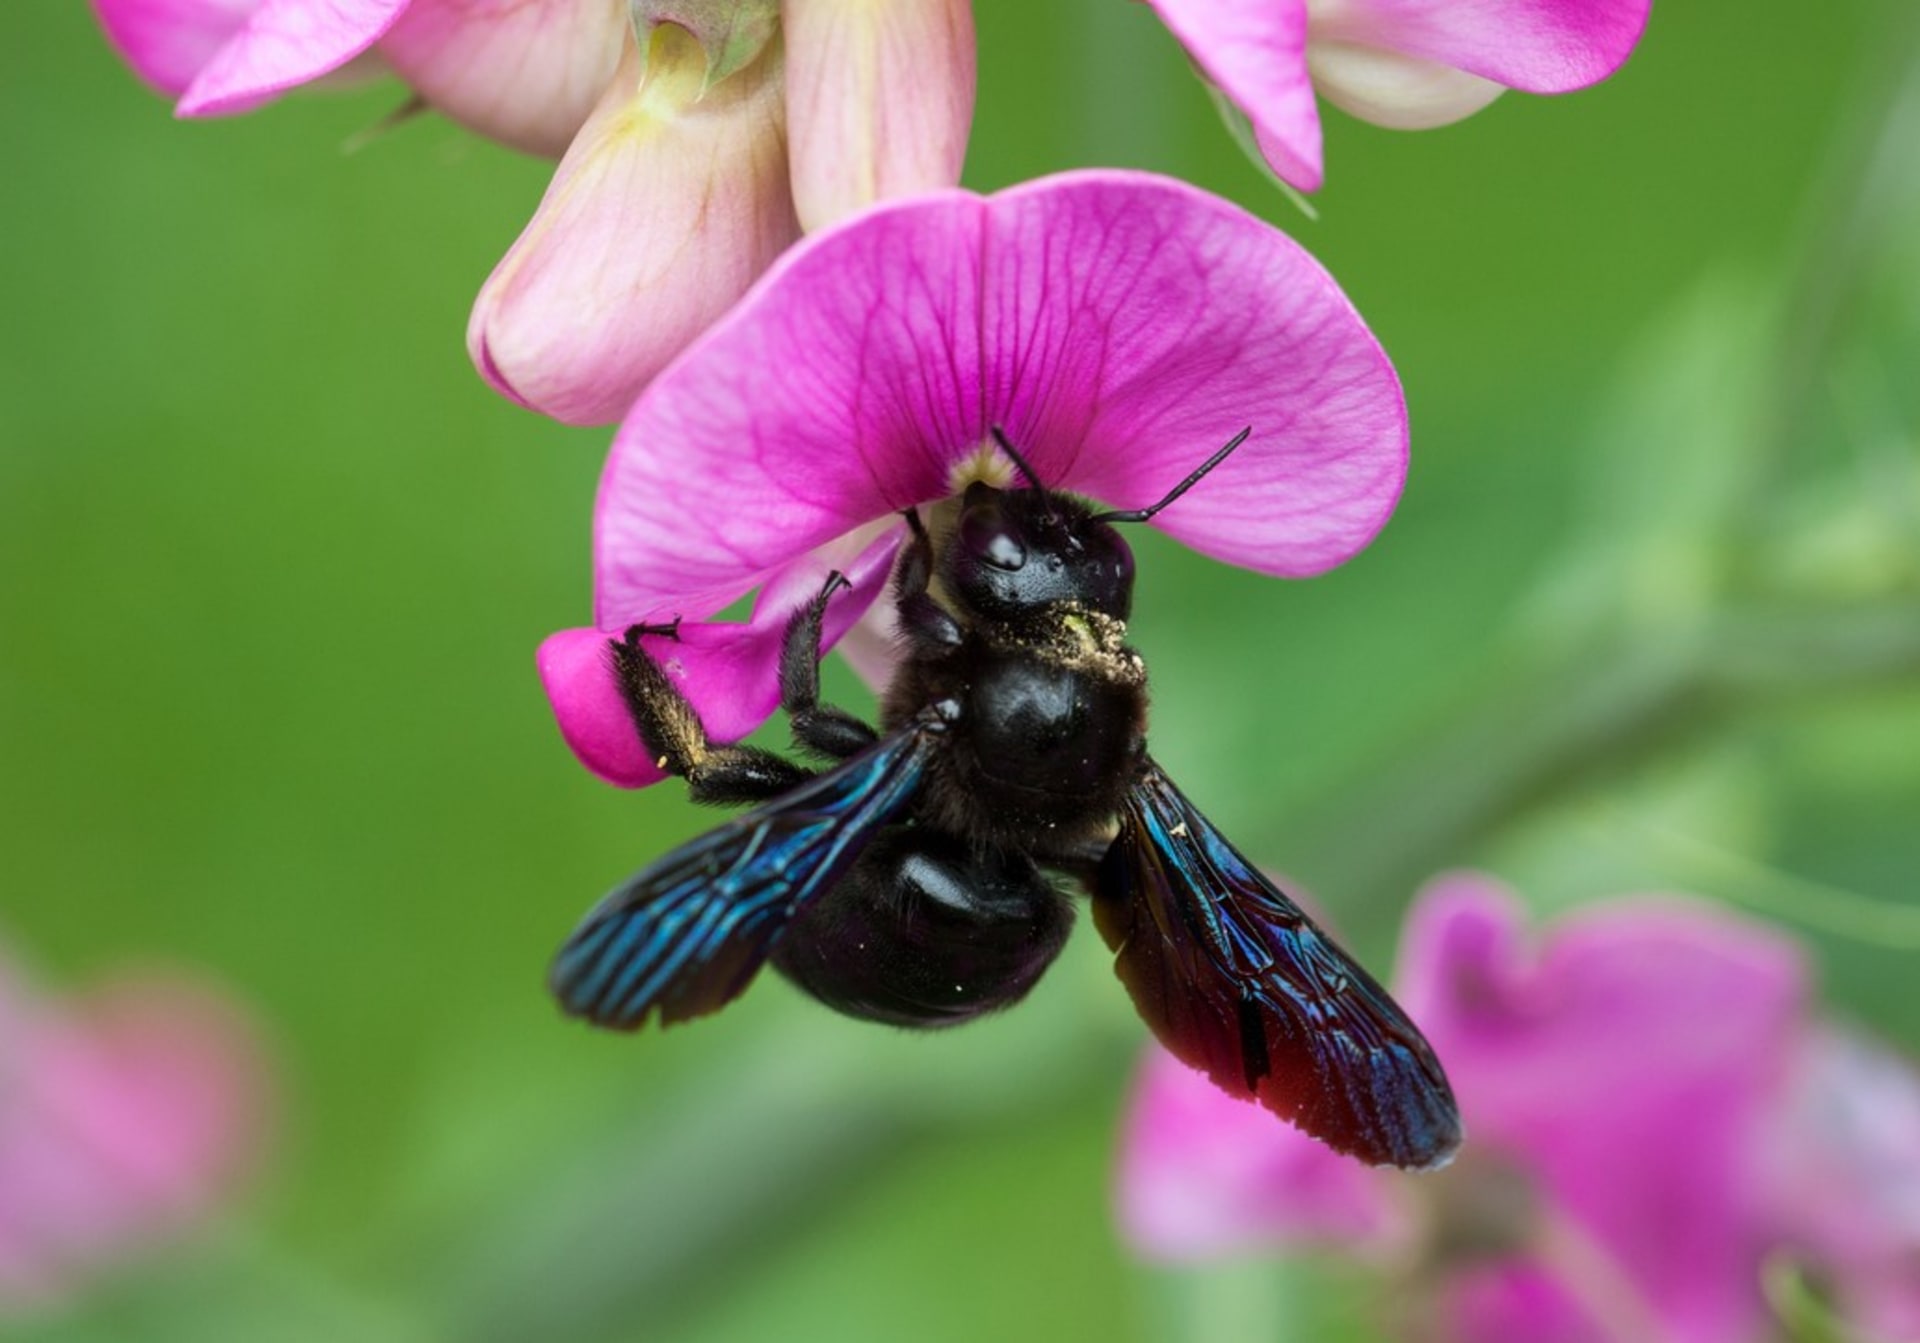 Drvodělka, obří včela samotářka, je neškodná a užitečná 